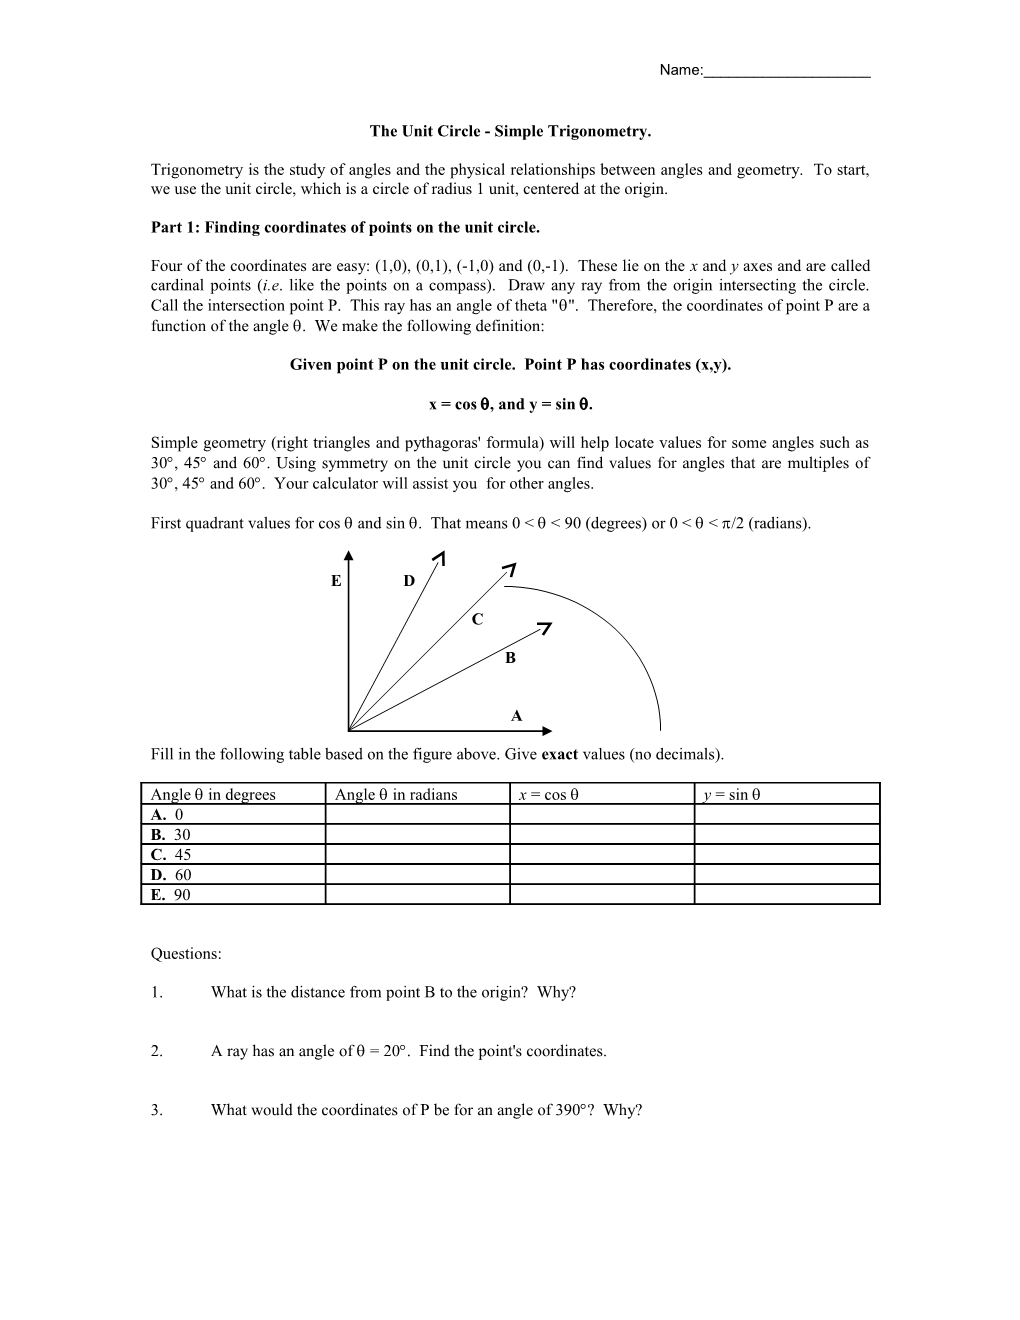 The Unit Circle - Simple Trigonometry